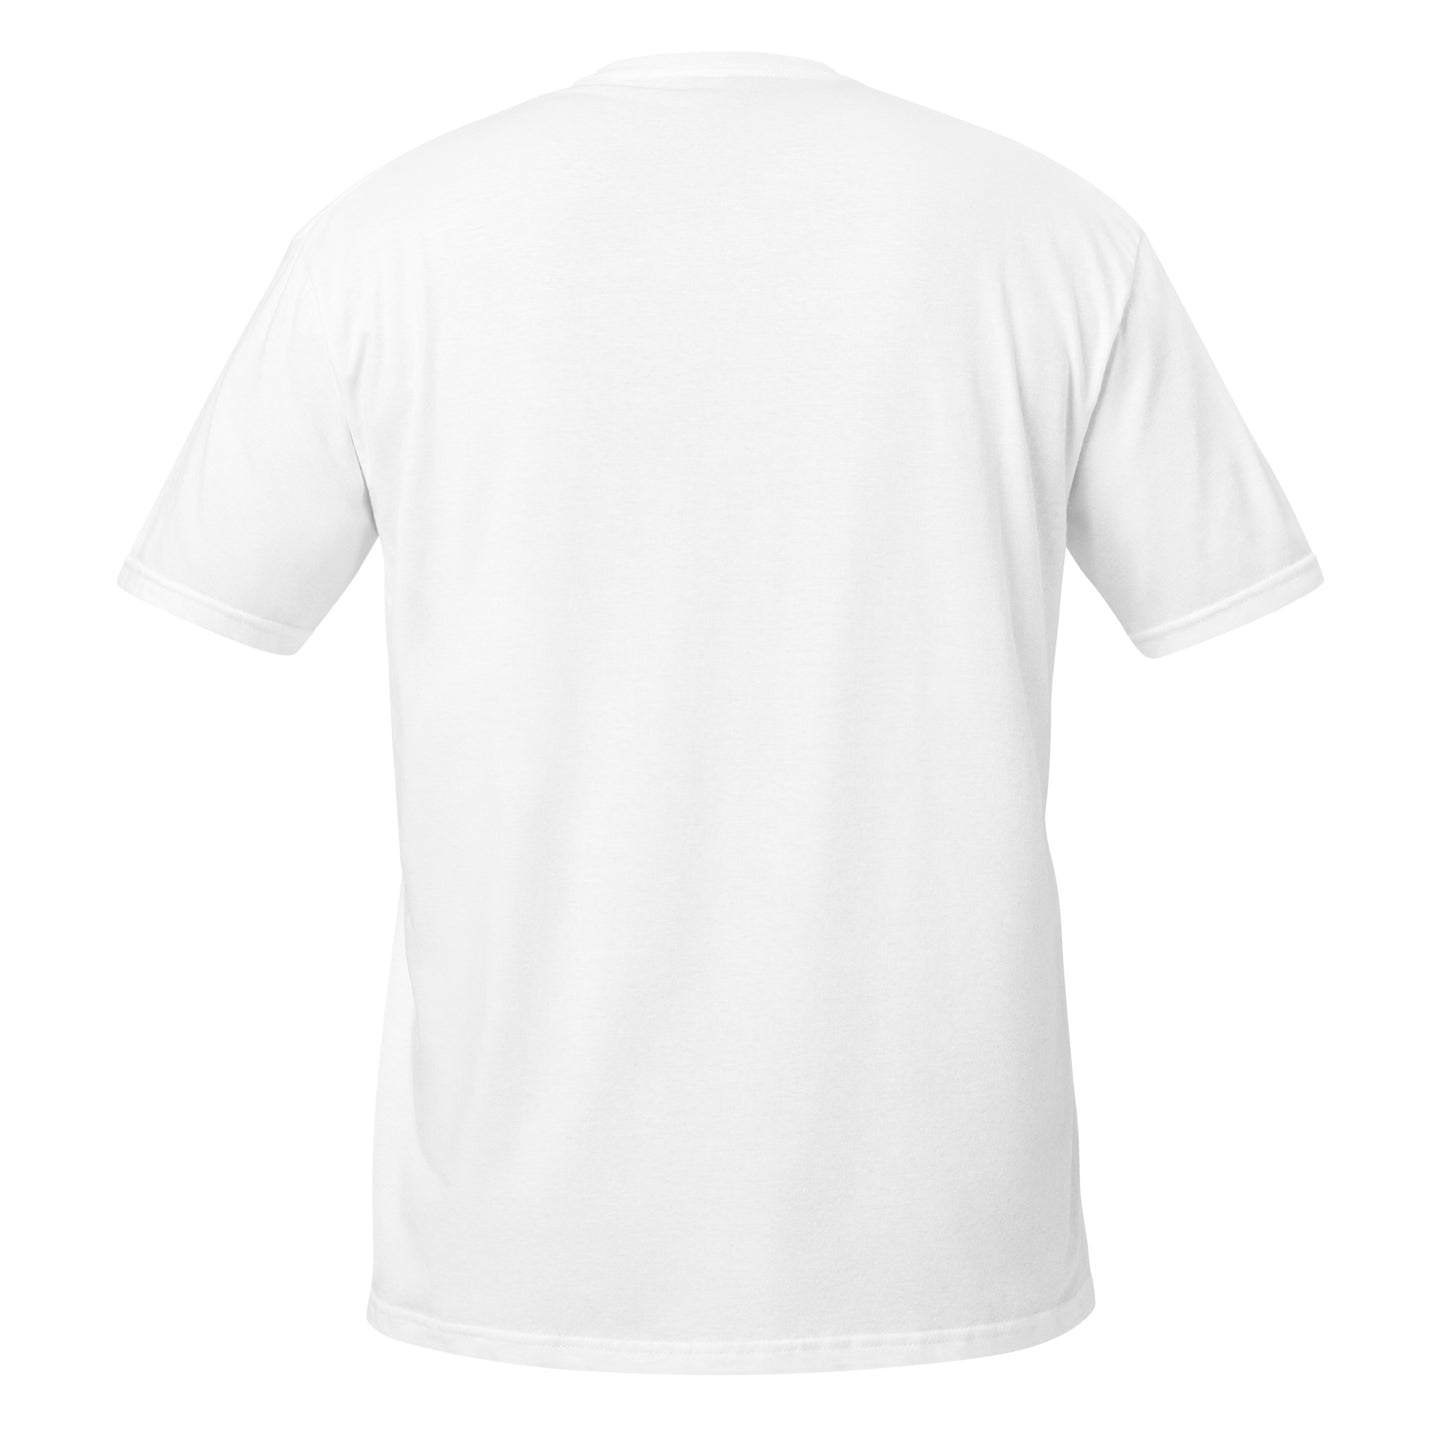 Uniseks T-shirt Citroën Acadiane lijntekening discreet in het midden - Zwart, Navy of Wit